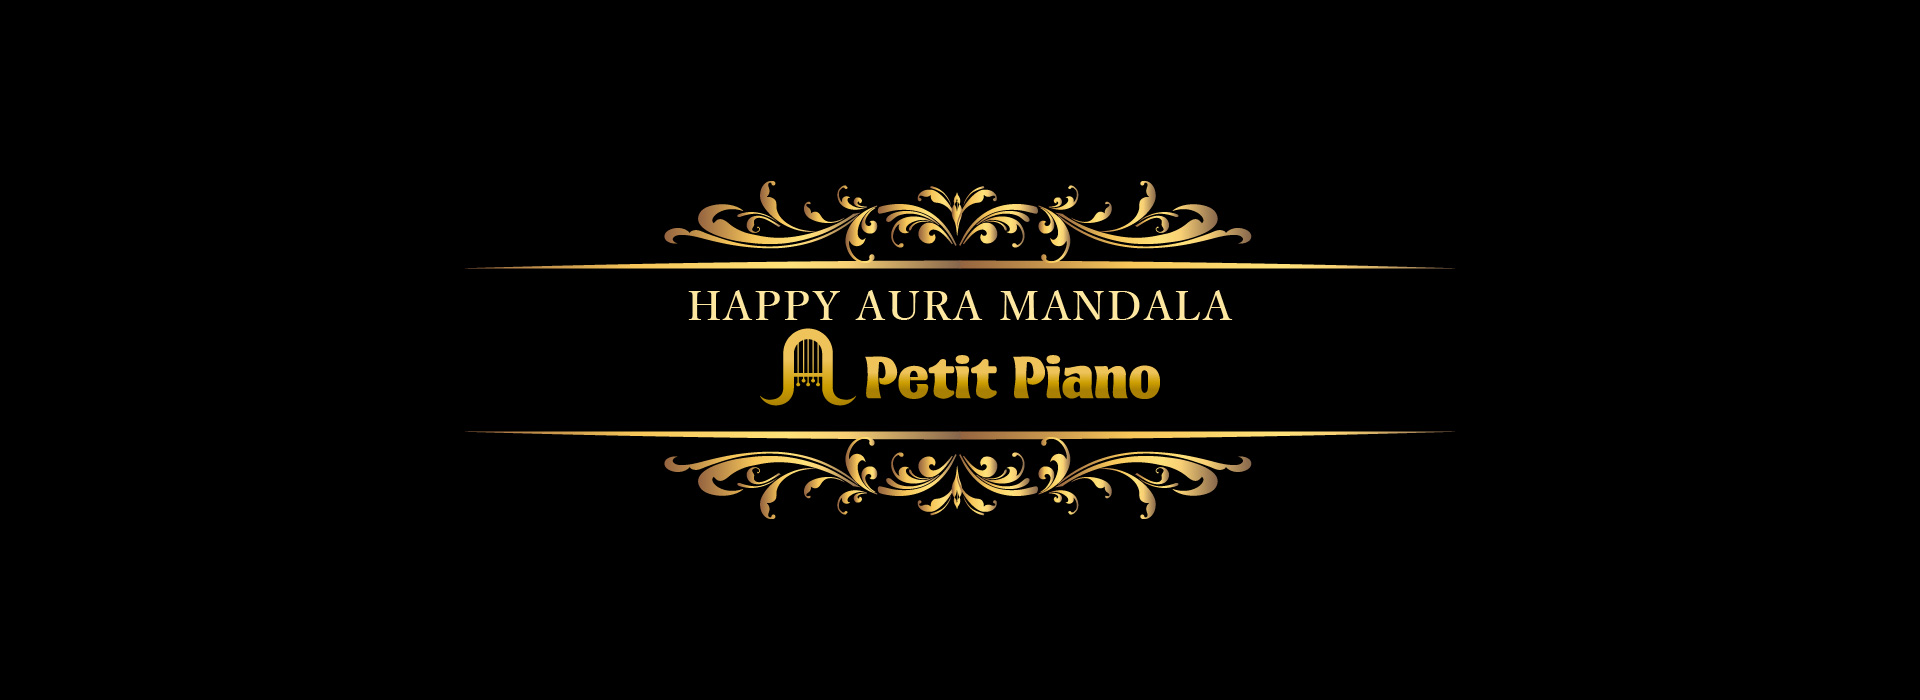 Petit Piano Happy Aura Mandalaロゴ